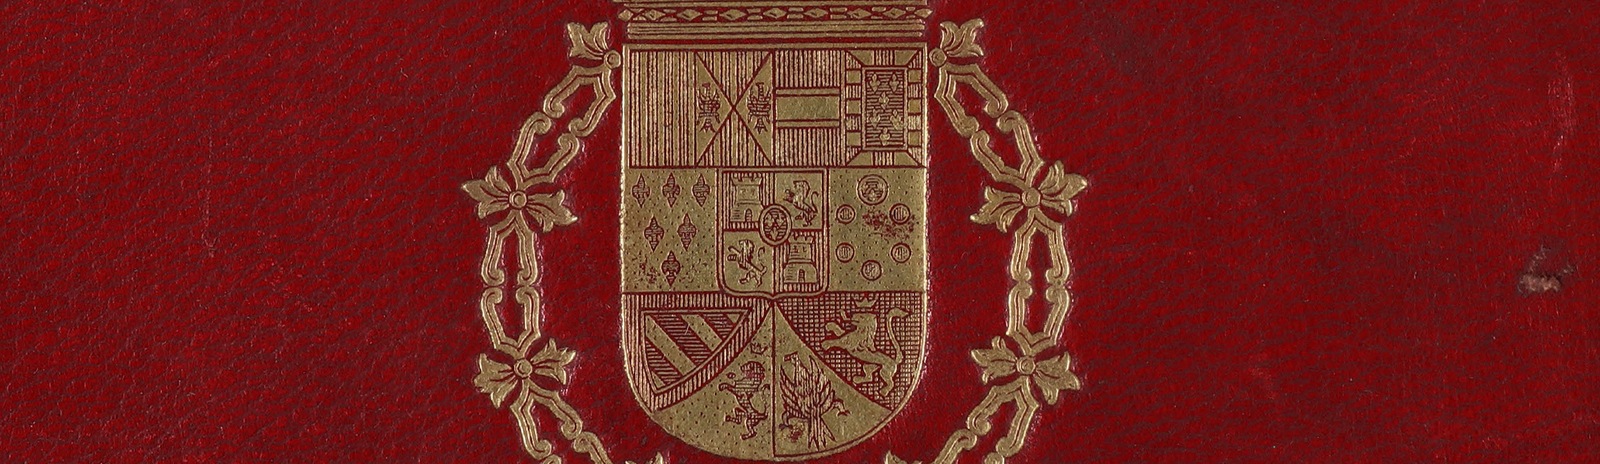 Фоновое изображение Геральдический аттестат Фарнезского уланского полка испанской армии